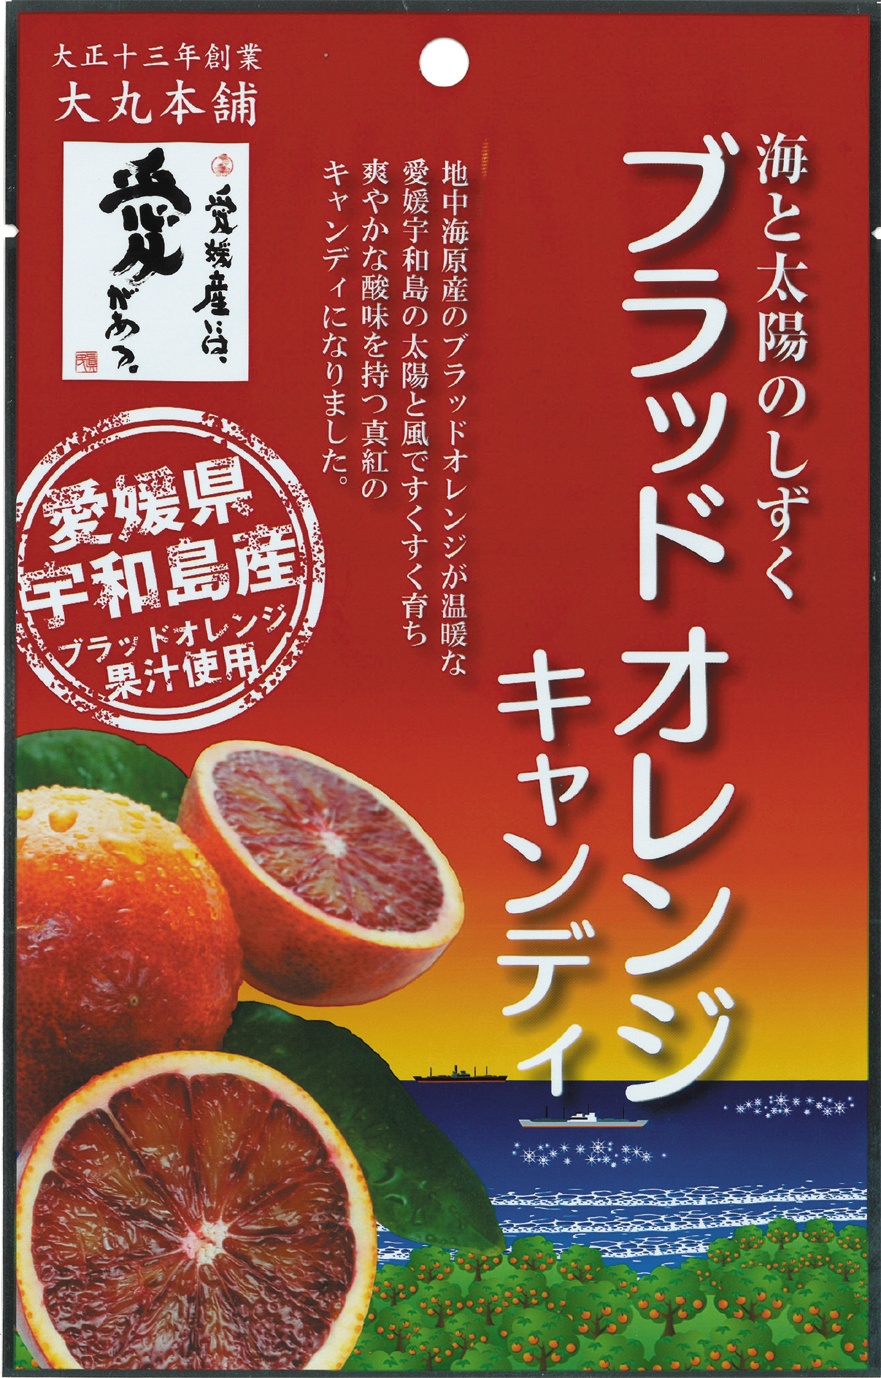 【愛媛県宇和島産ブラッドオレンジ果汁使用】ブラッドオレンジキャンディ